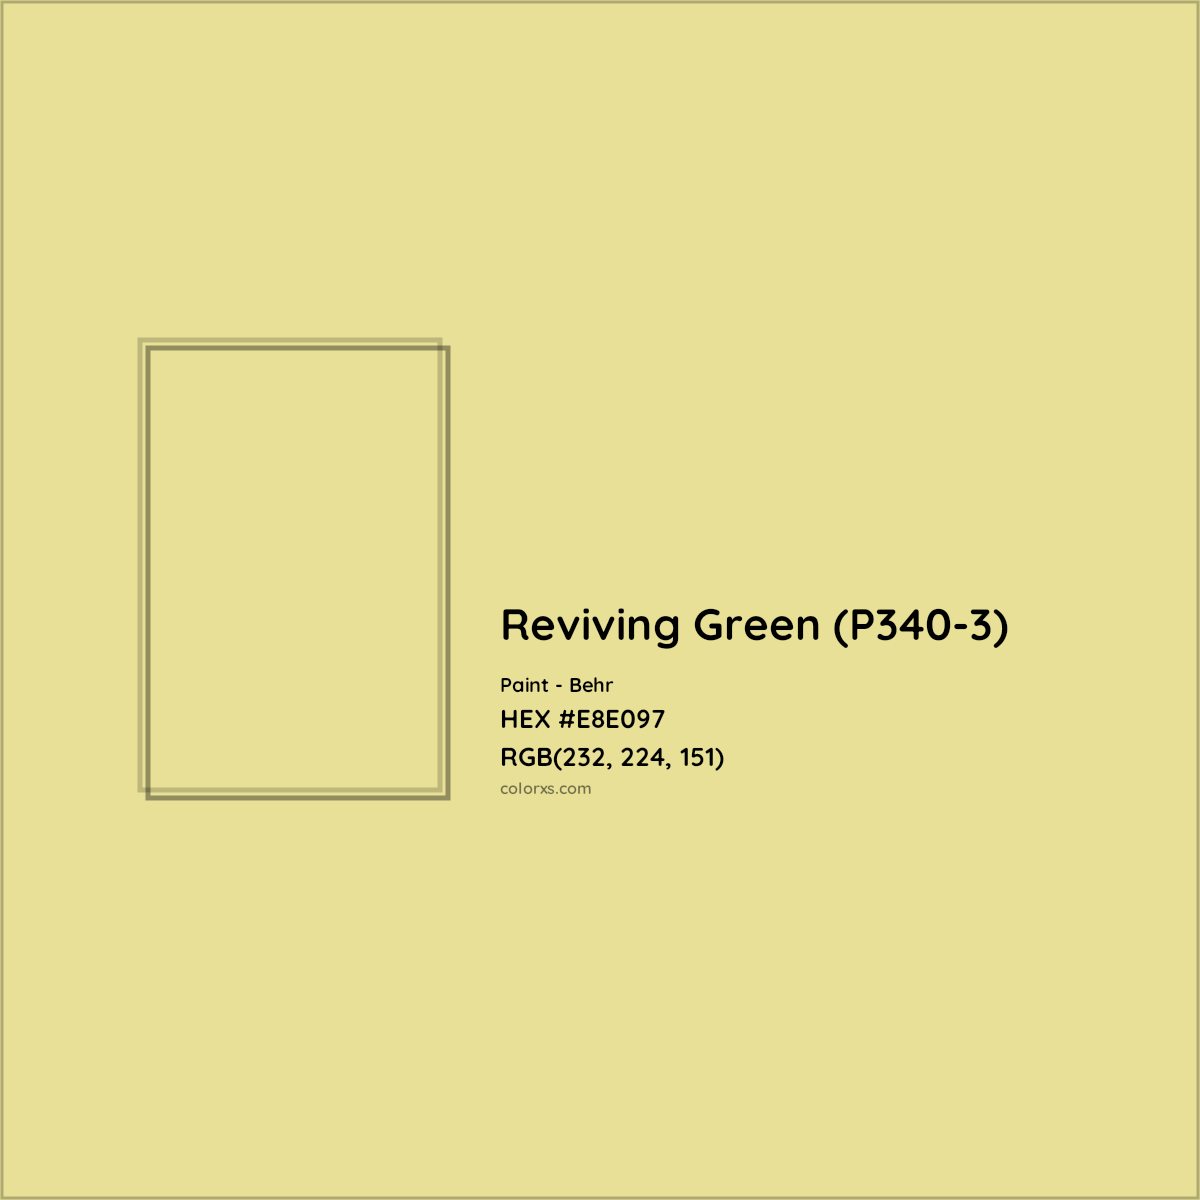 HEX #E8E097 Reviving Green (P340-3) Paint Behr - Color Code